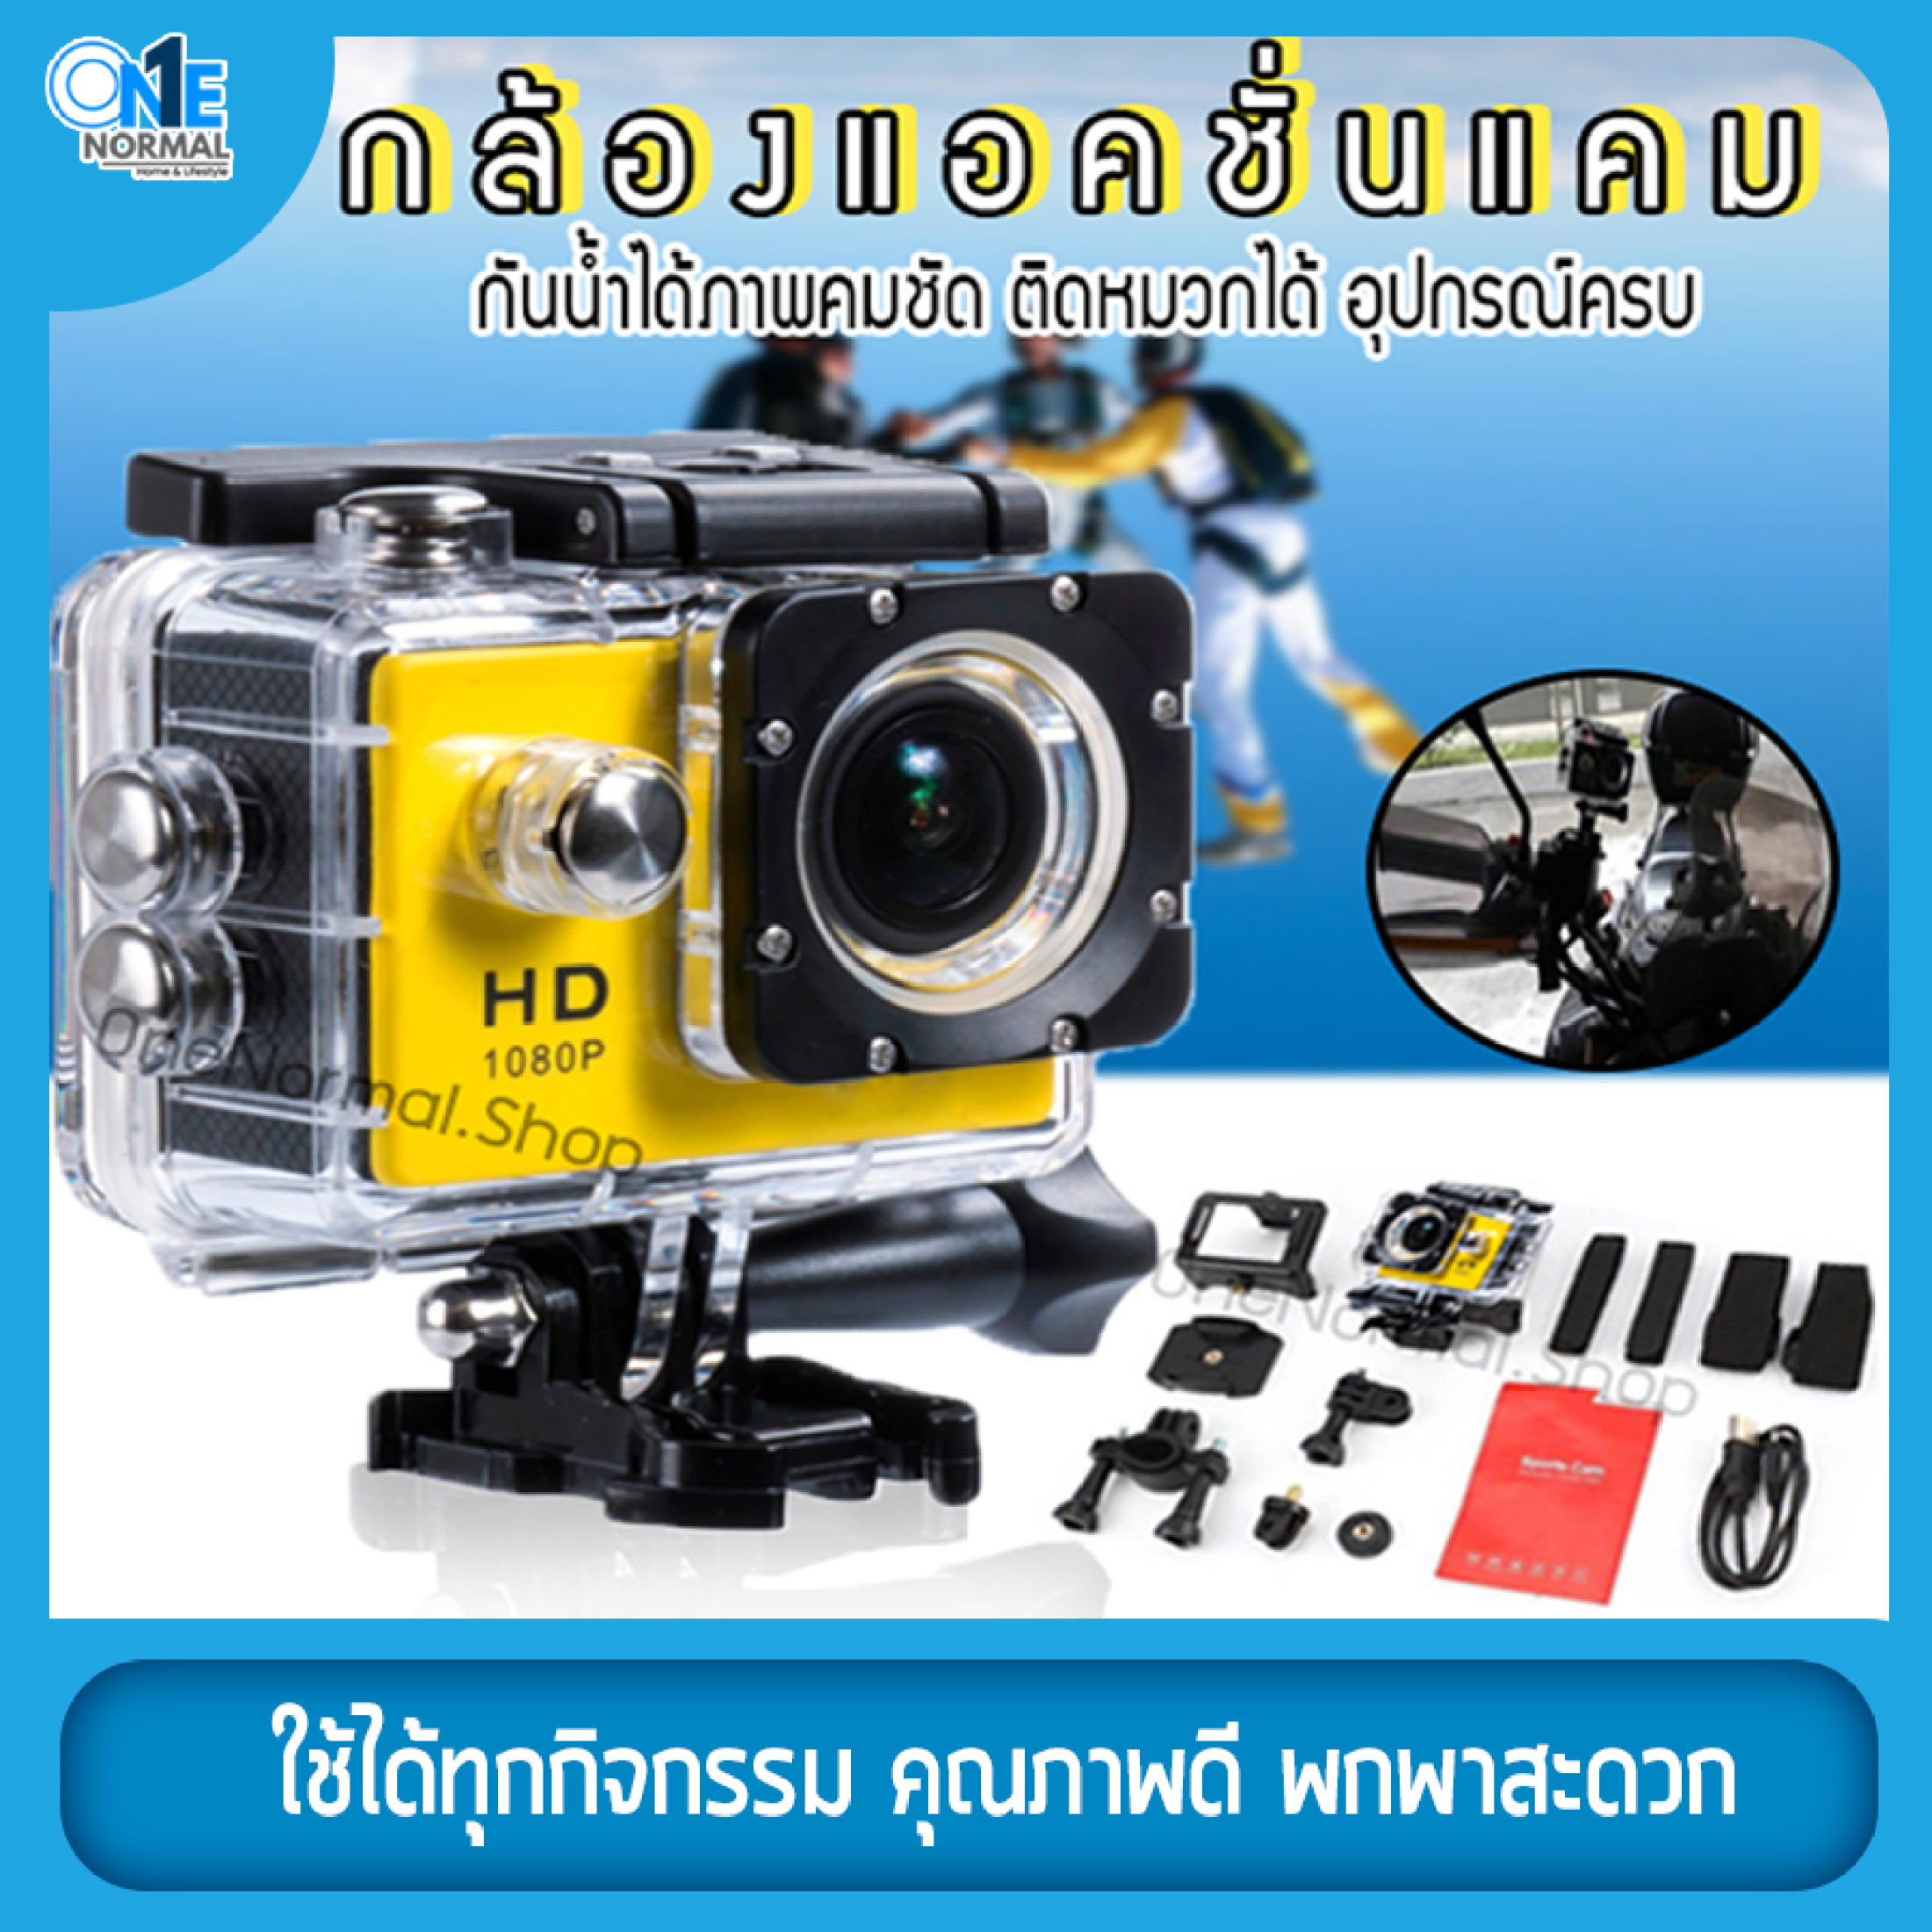 กล้อง กล้องกันน้ำ กล้องวิดิโอ กล้องแอคชั่นแคม Waterproof Camera กล้องบันทึกภาพ กล้องติดหมวกกันน็อค กล้องติดหน้ารถ กล้องขนาดเล็ก Camera 1080P Full HD DV Sport Camera กันน้ำได้ลึกถึง 30 เมตร สีเหลือง OneNormal.Shop